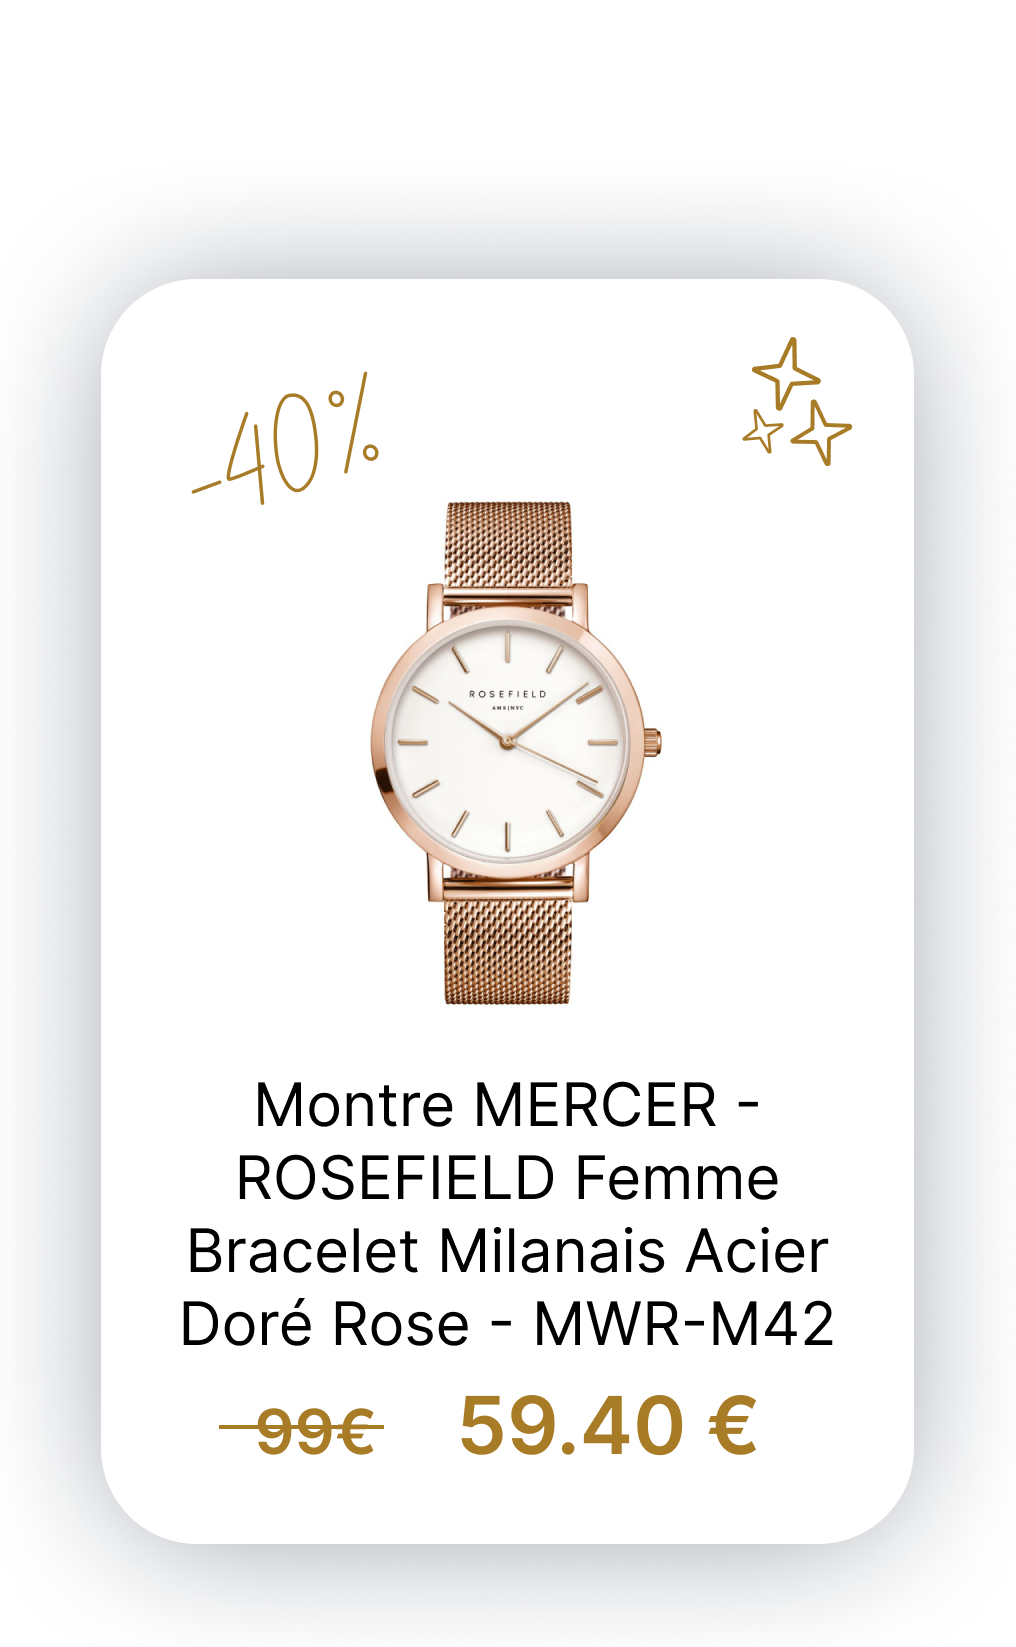 Montre MERCER - ROSEFIELD Femme Bracelet Milanais Acier Doré Rose - MWR-M42